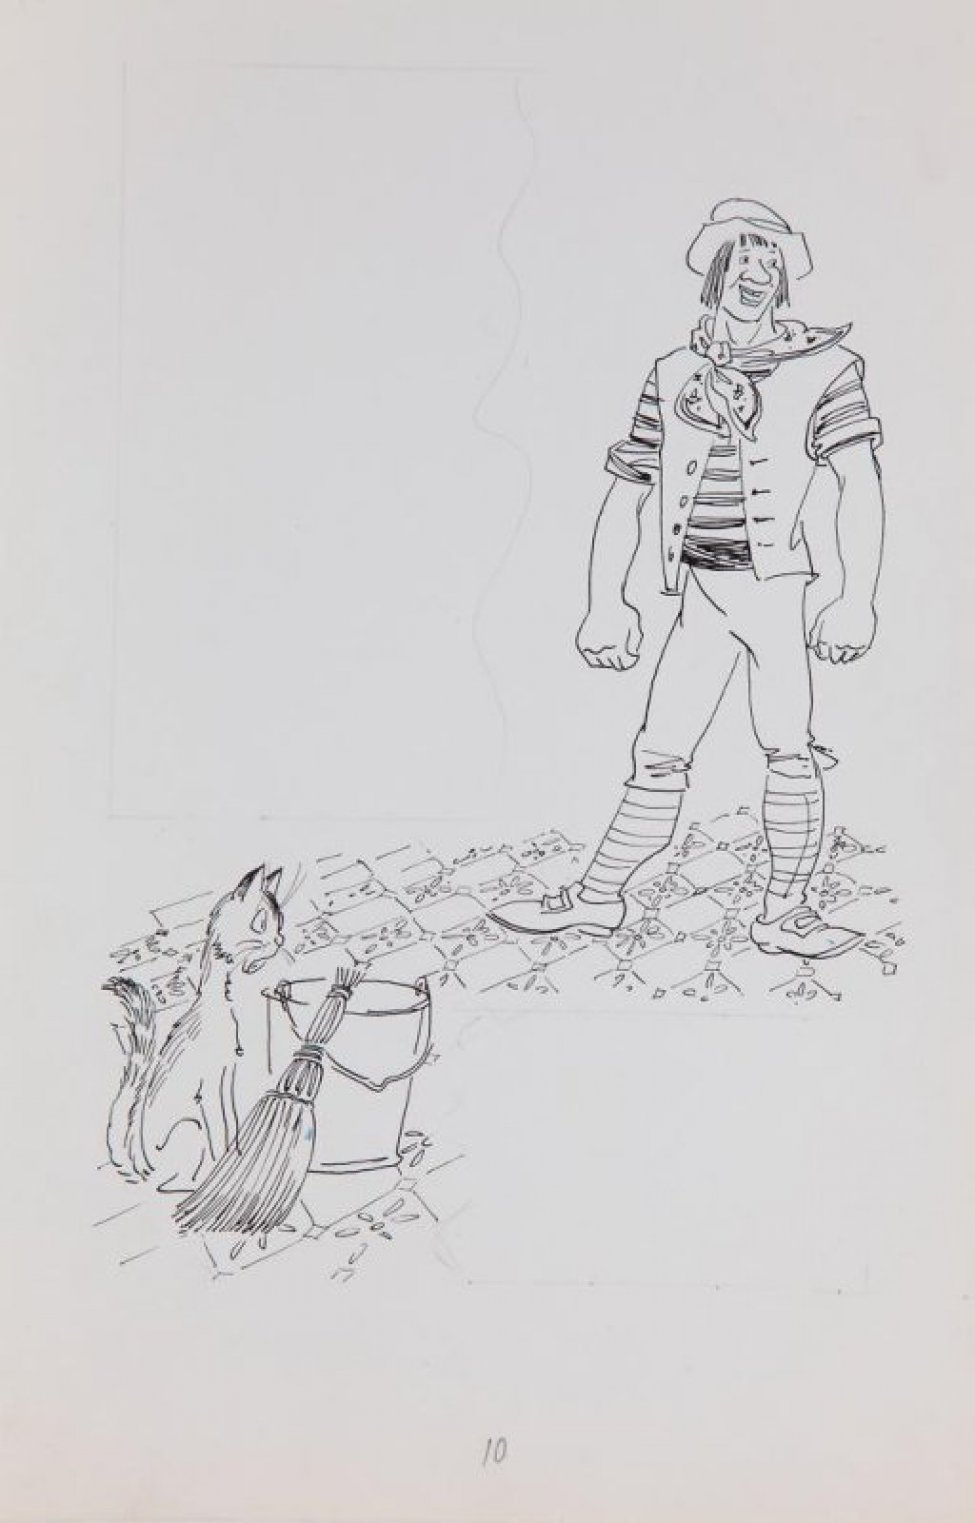 В правой части композиции изображен молодой улыбающийся человек, стоящий на паркете, широко расставив ноги, с опущенными руками, сжатыми в кулаки. Слева - кошка, сидящая возле ведра с веником. В верхней части листа слева карандашом разметка для текста.